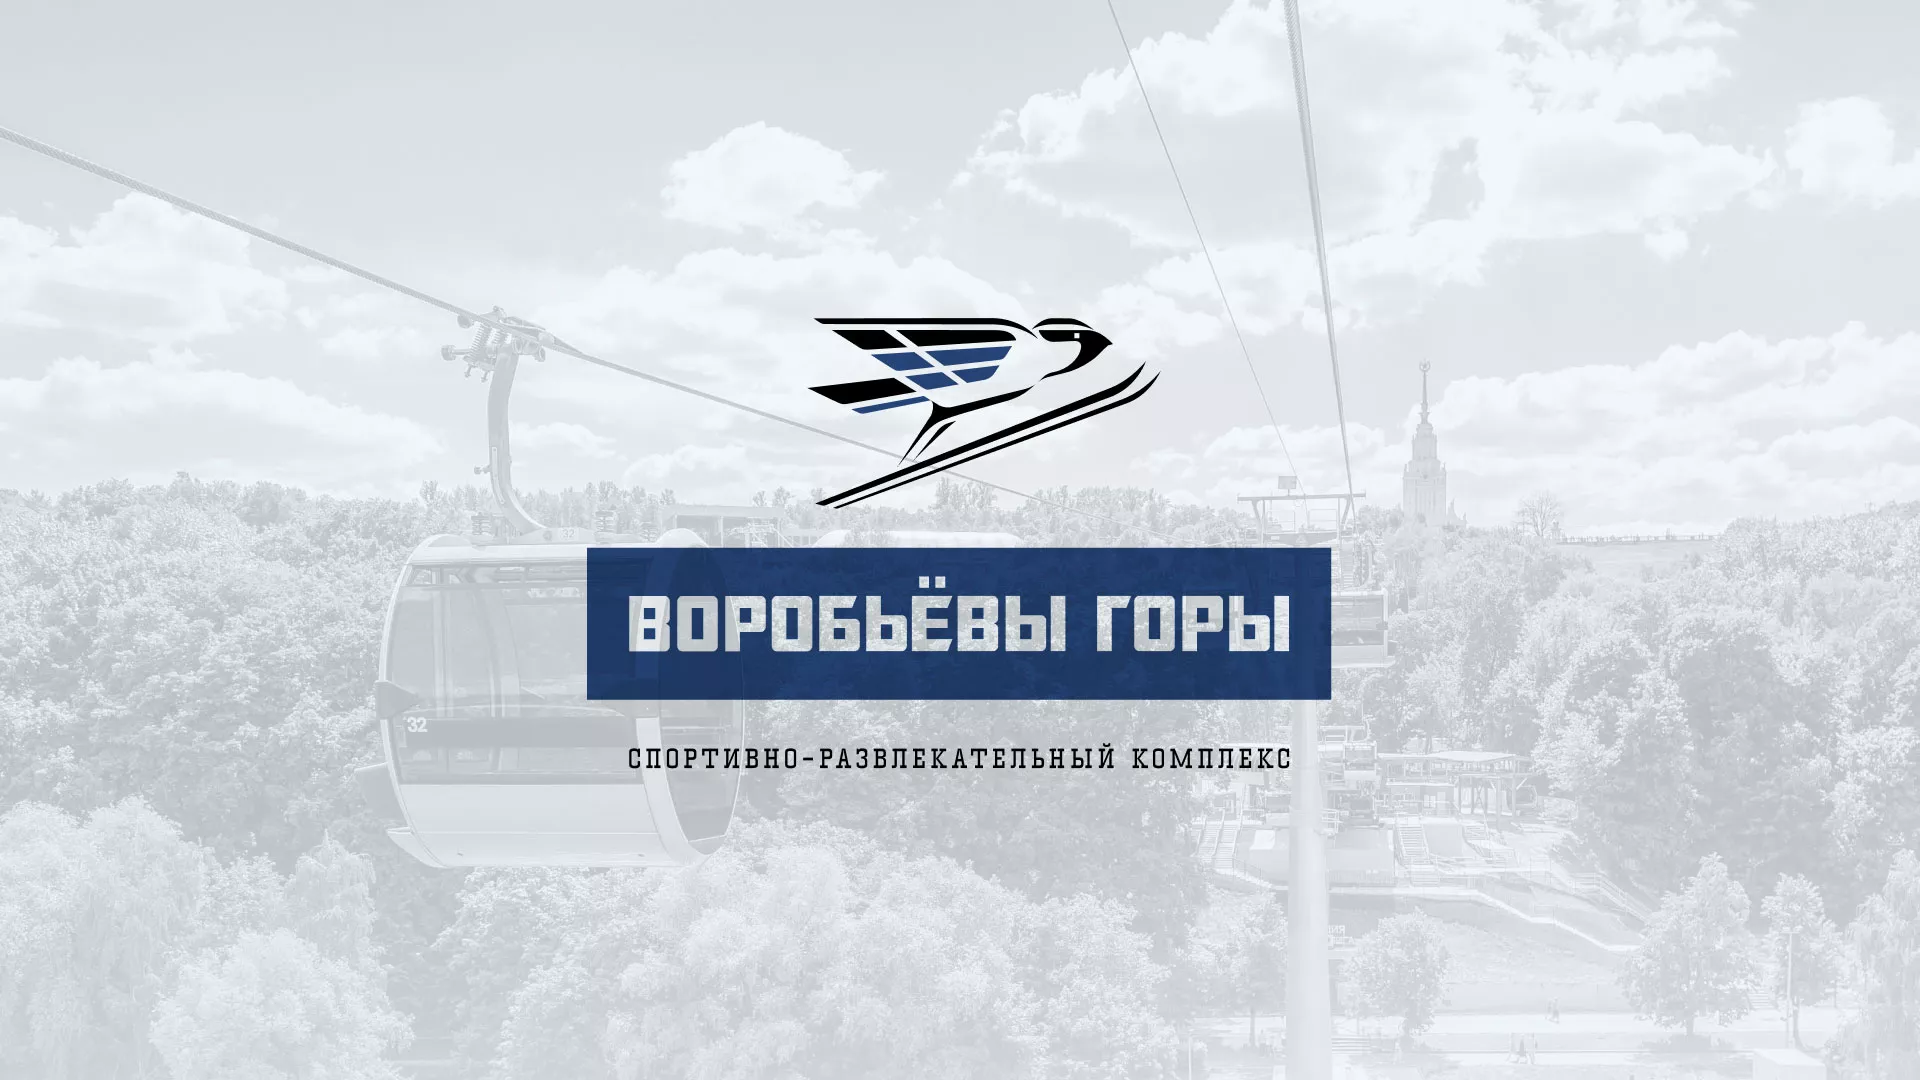 Разработка сайта в Сосновке для спортивно-развлекательного комплекса «Воробьёвы горы»